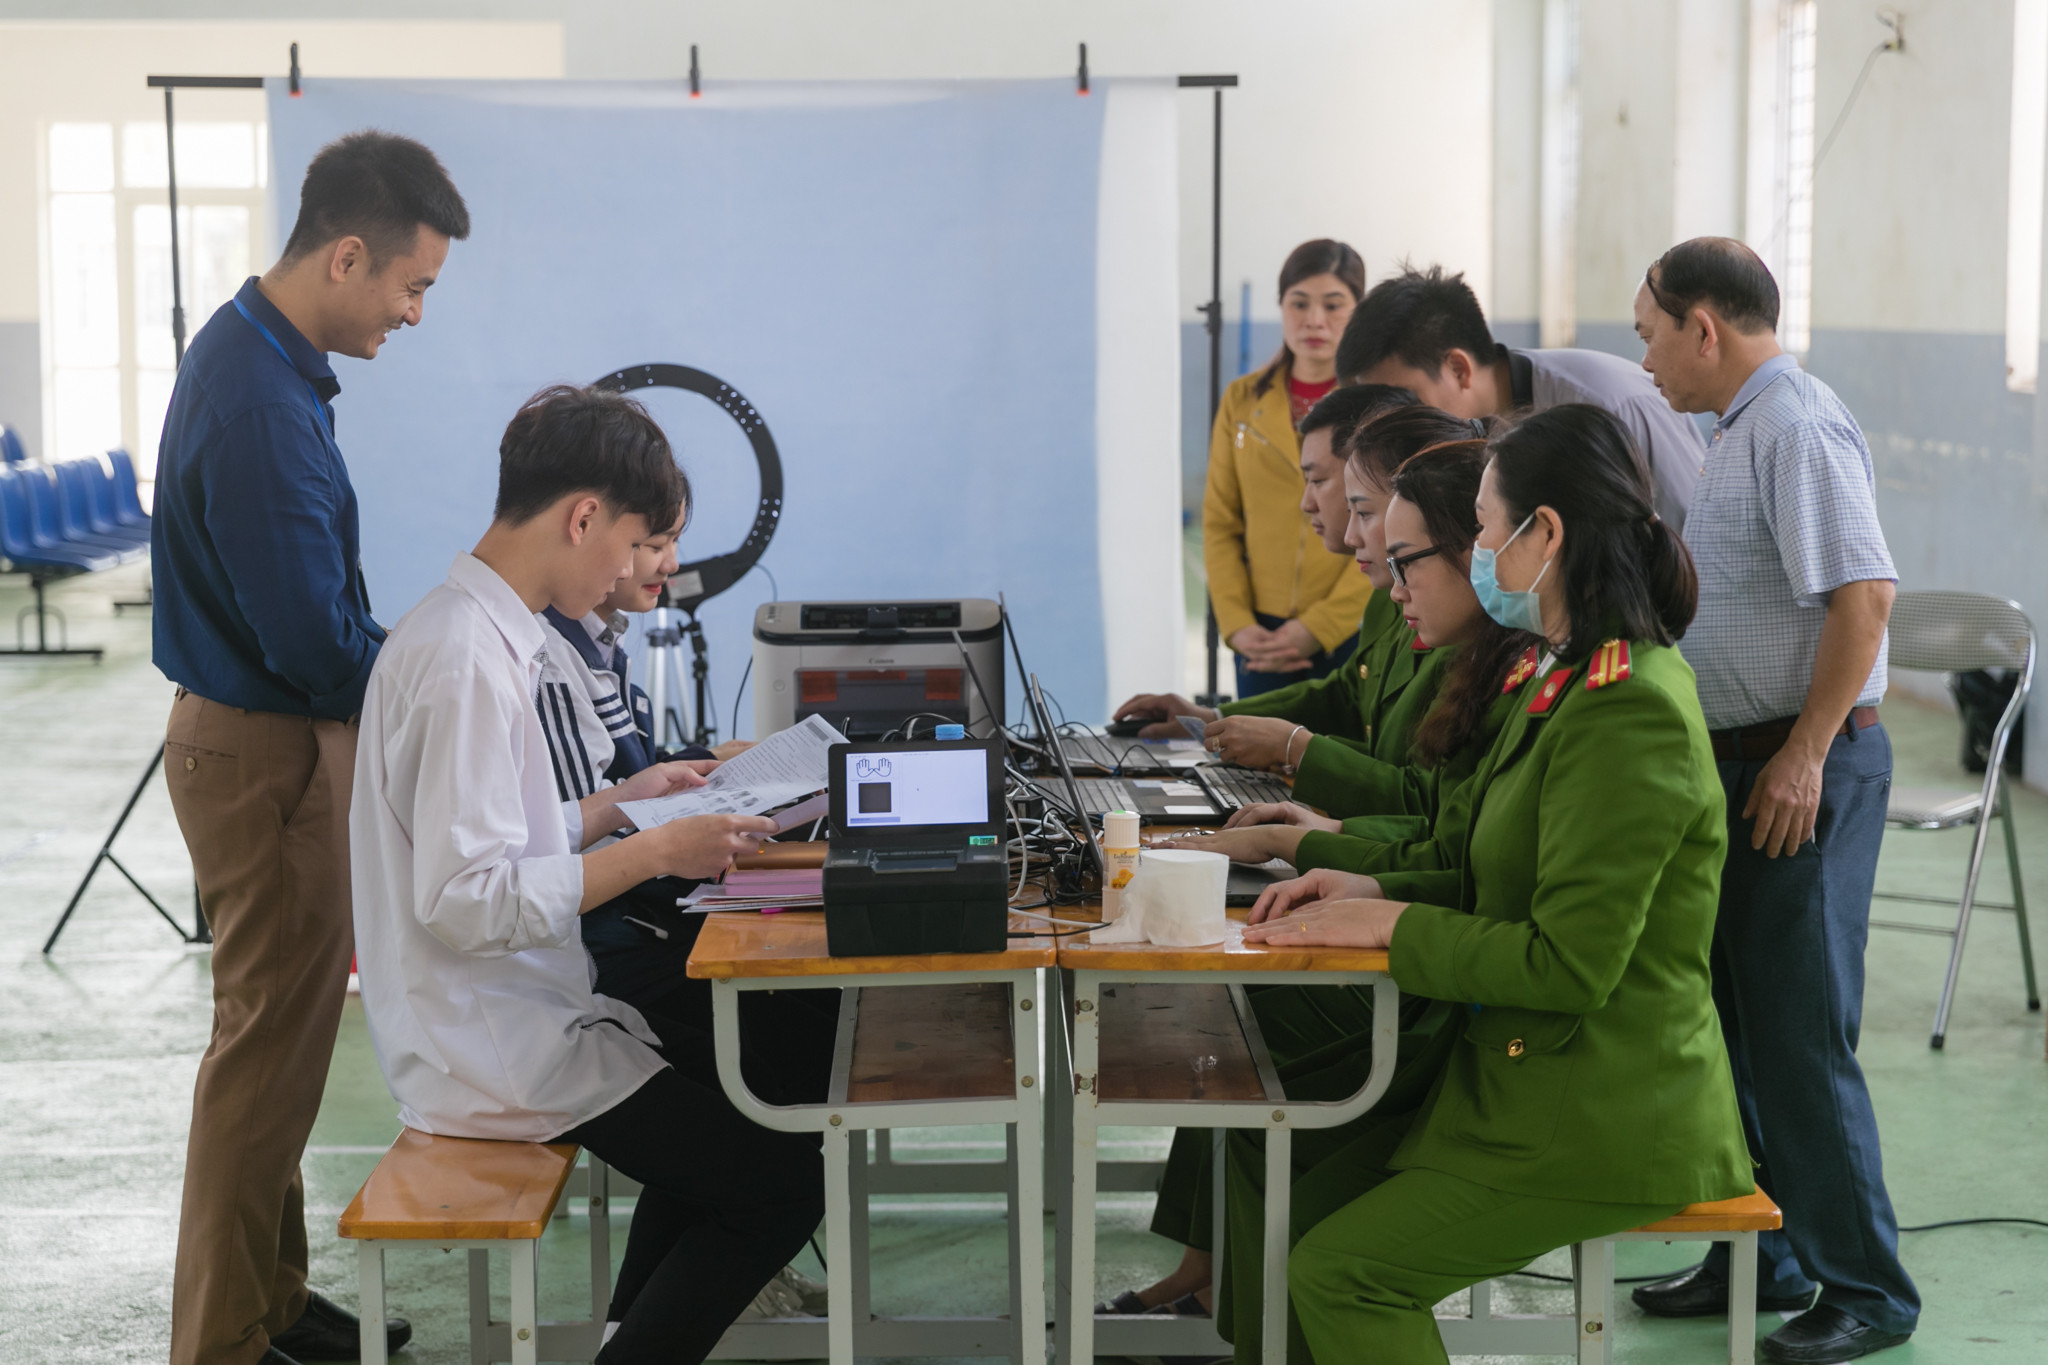 Trường THPT Lê Viết Thuật hiện có hơn 1500 học sinh và giáo viên. Để đảm bảo tiến độ nhanh, chính xác theo chủ trương của ngành, các tổ công tác sẽ tiến hành cấp căn cước cho công dân không kể ngày đêm.